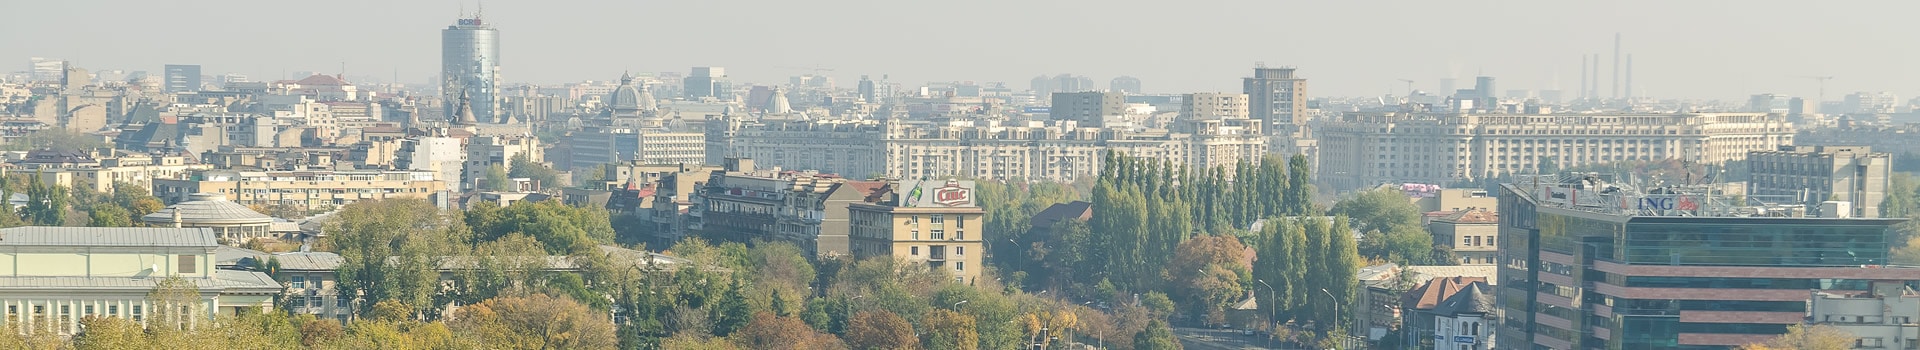 Corunha - Bucareste